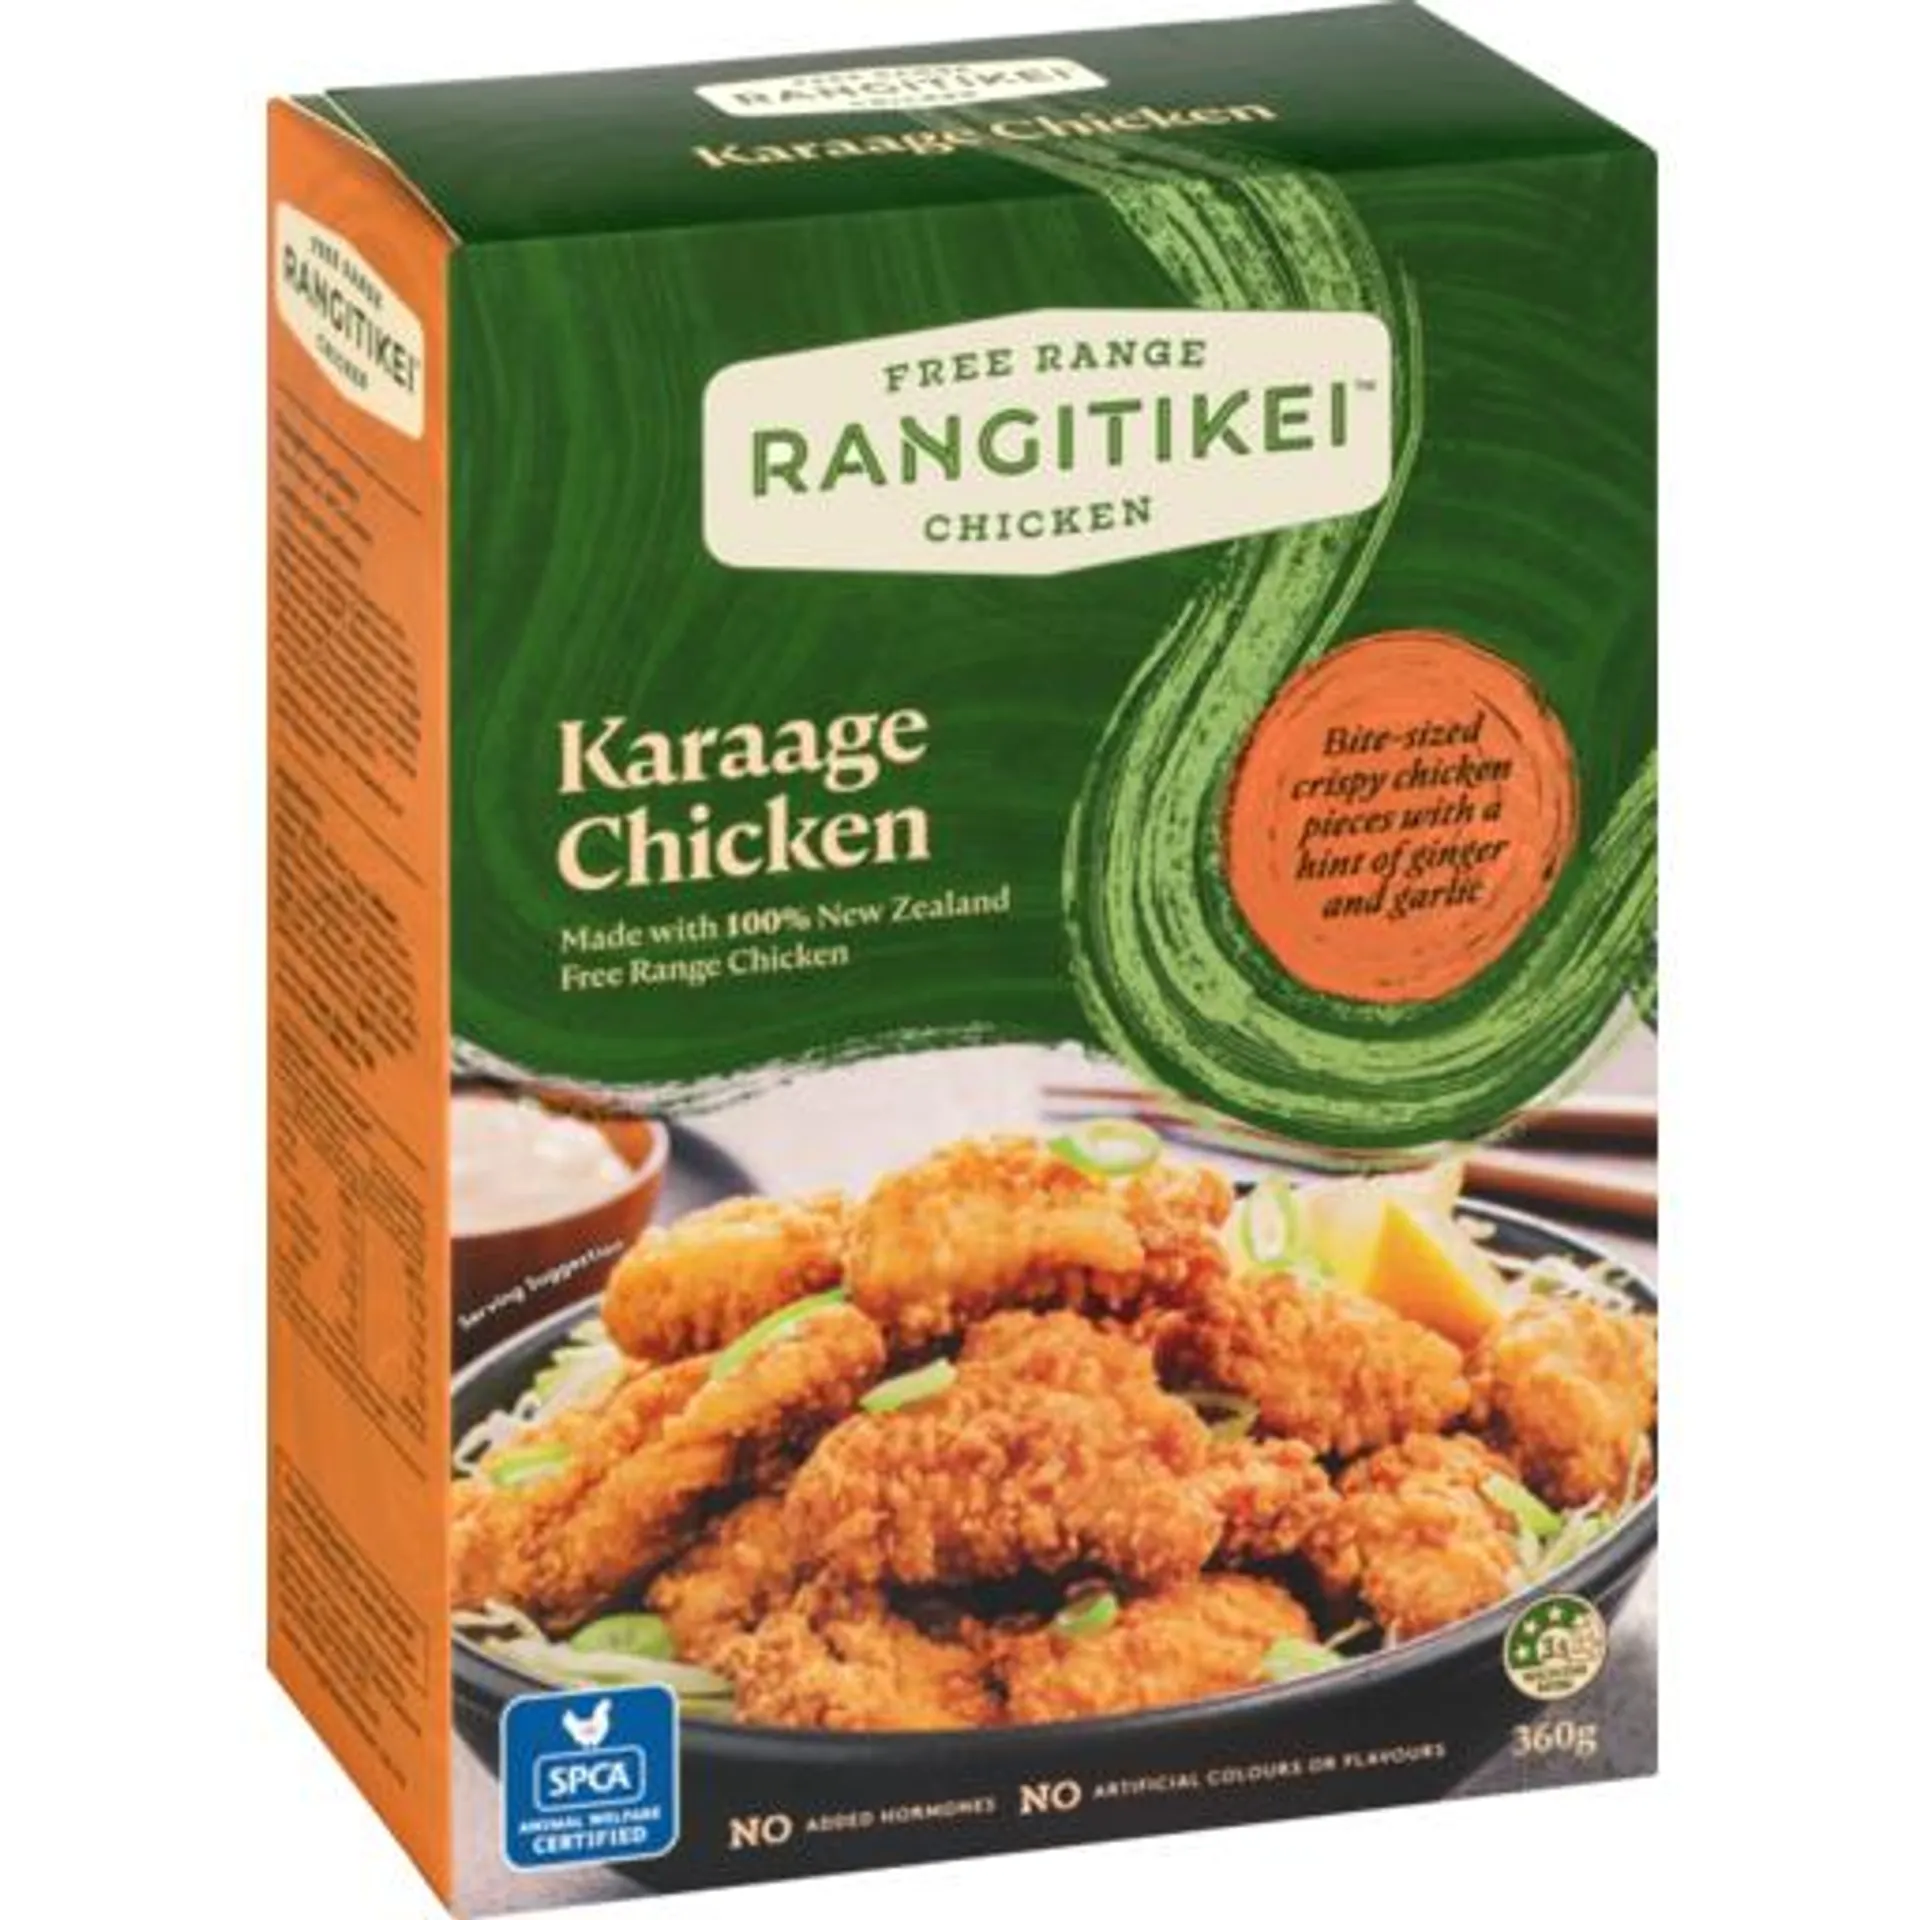 Rangitikei Free Range Karaage Chicken Chunks 360g